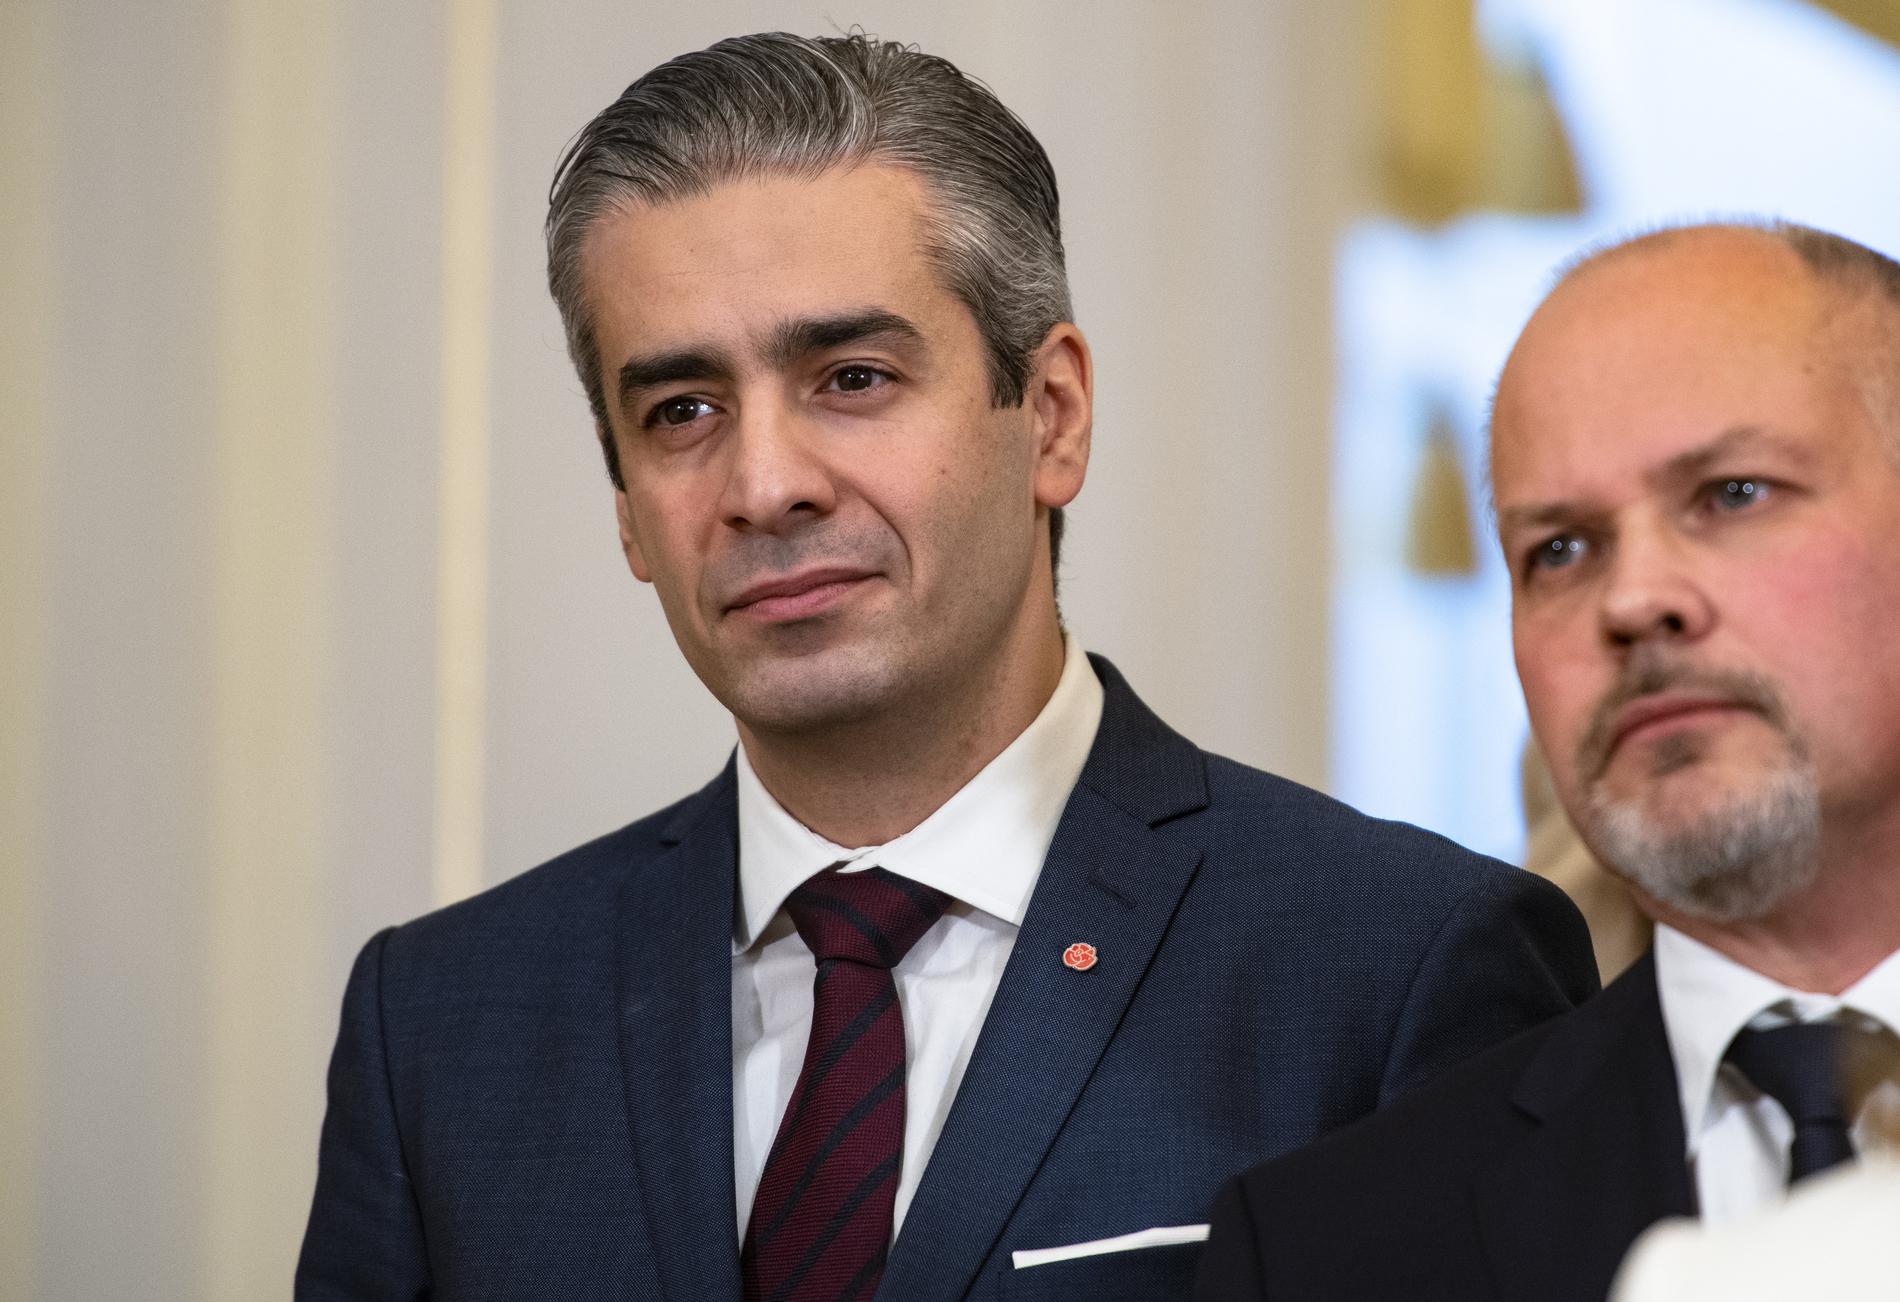 Khashayar Farmanbar, energi- och digitaliseringsminister, svarar på frågor från Aftonbladets läsare